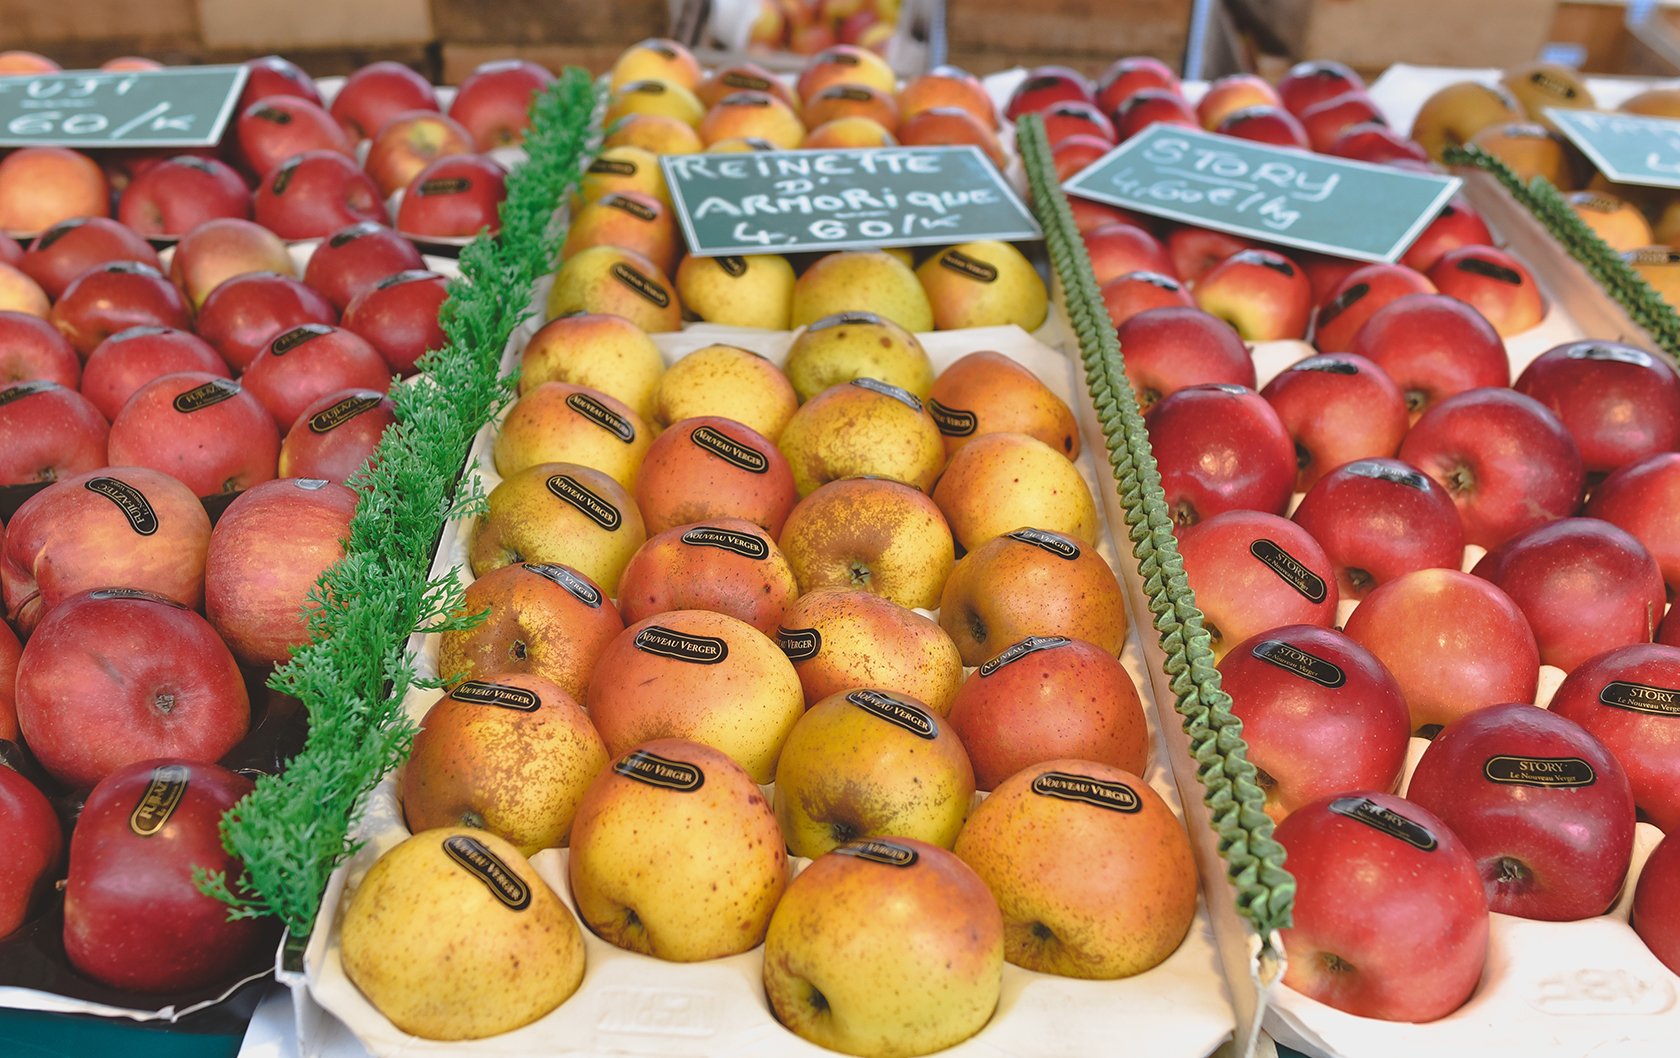 Apples at a Paris market